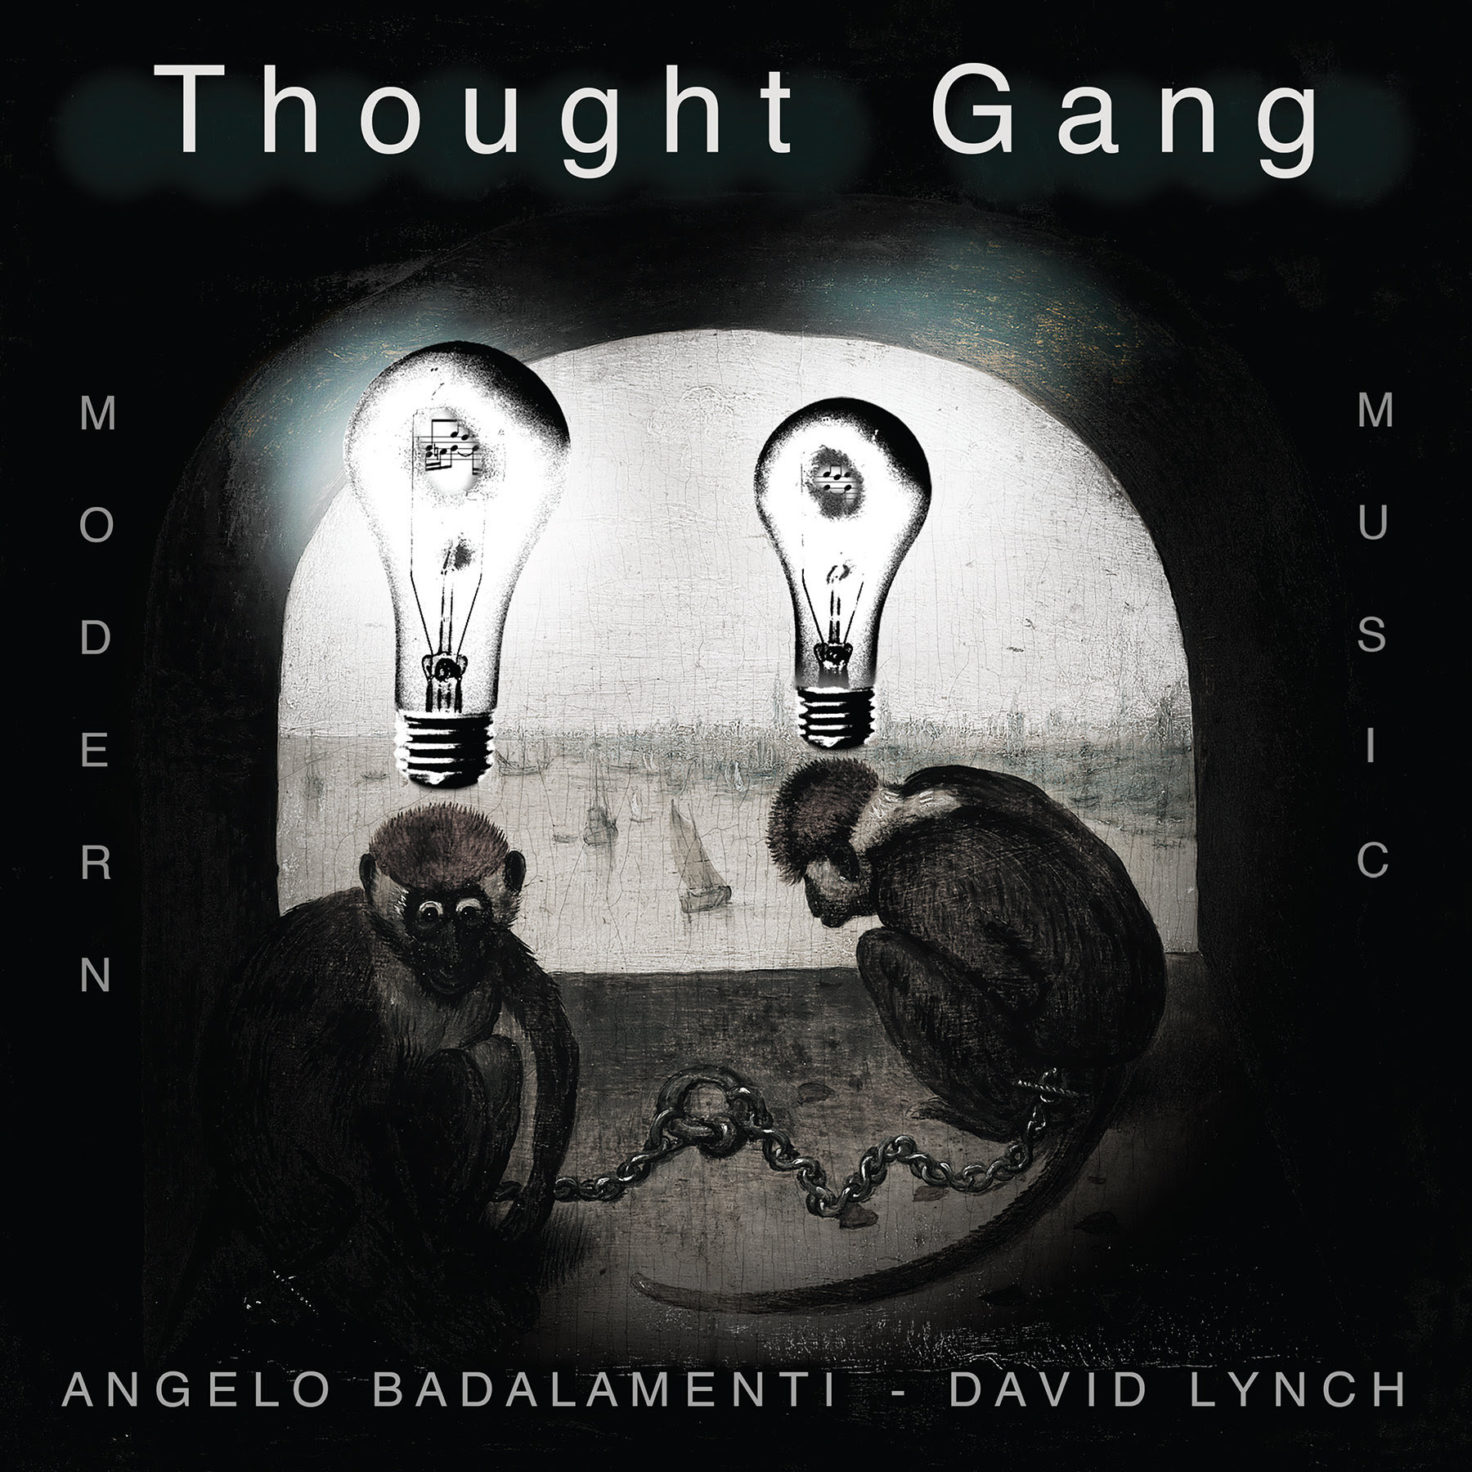 آلبوم مشترک دیوید لینچ و آنجلو بادالامنتی با نام Thought Gang